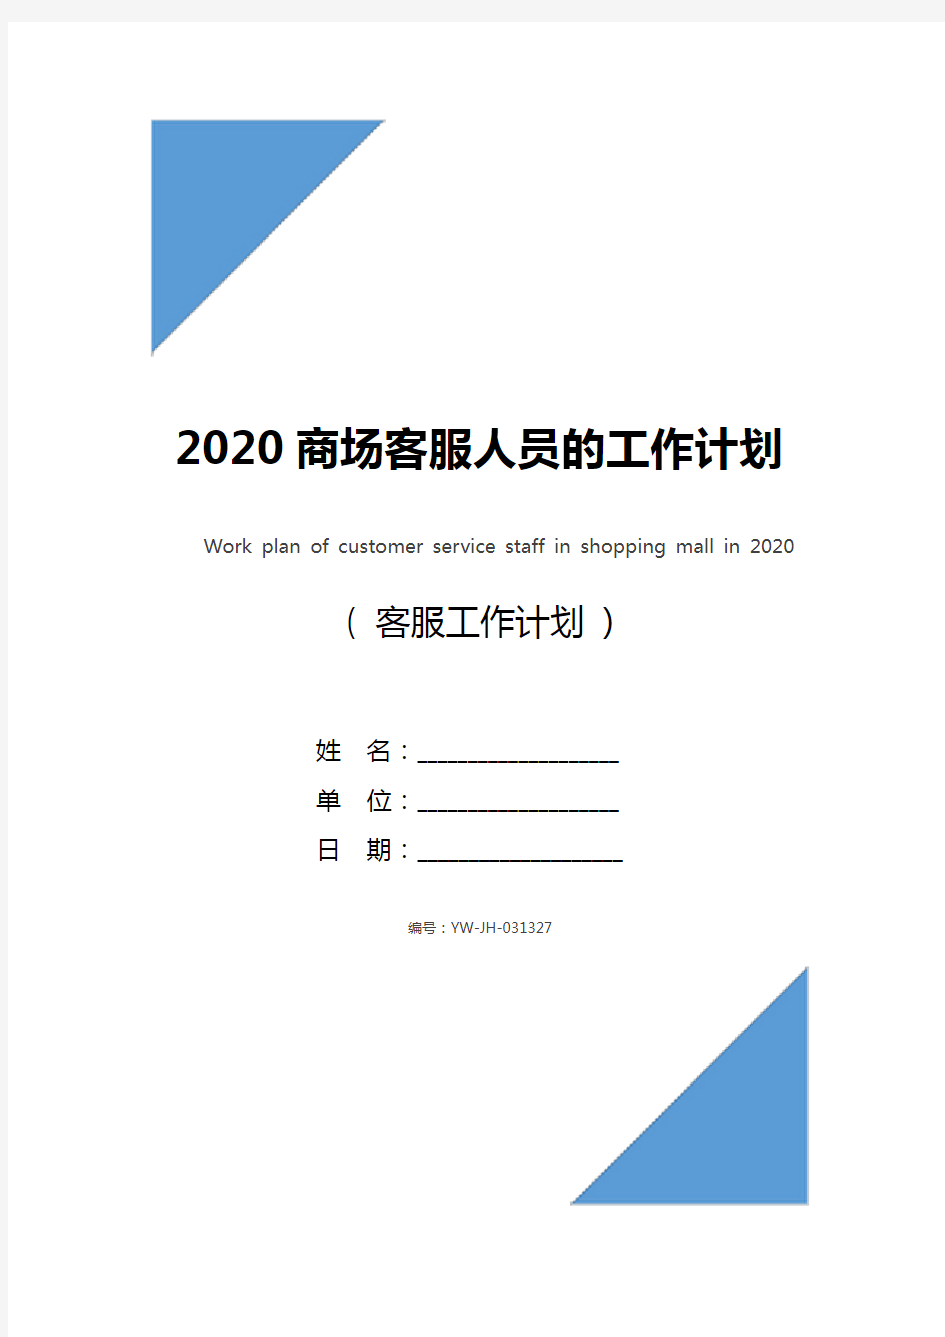 2020商场客服人员的工作计划